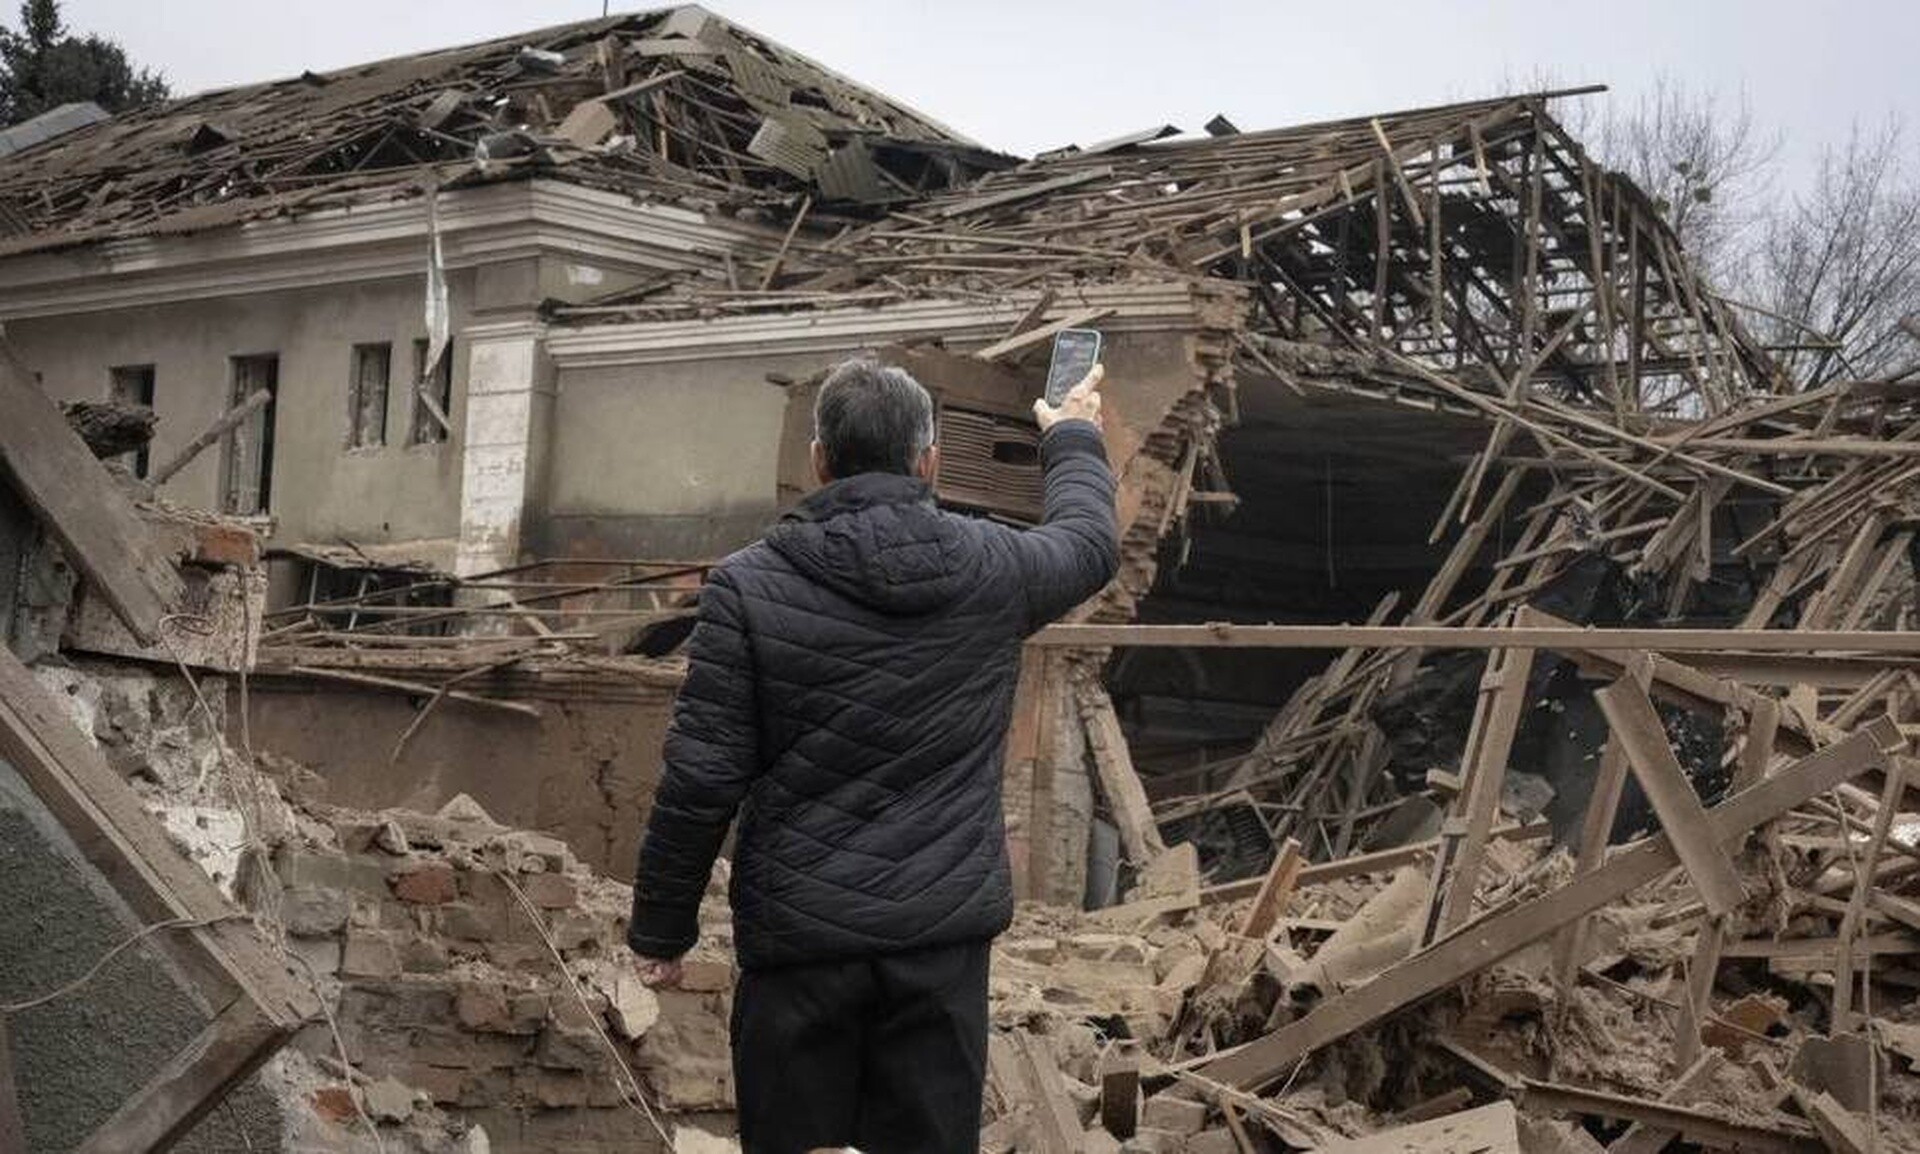 Ουκρανία: Σχολείο υπέστη ζημιές από ρωσική πυραυλική επίθεση στο Ντνίπρο